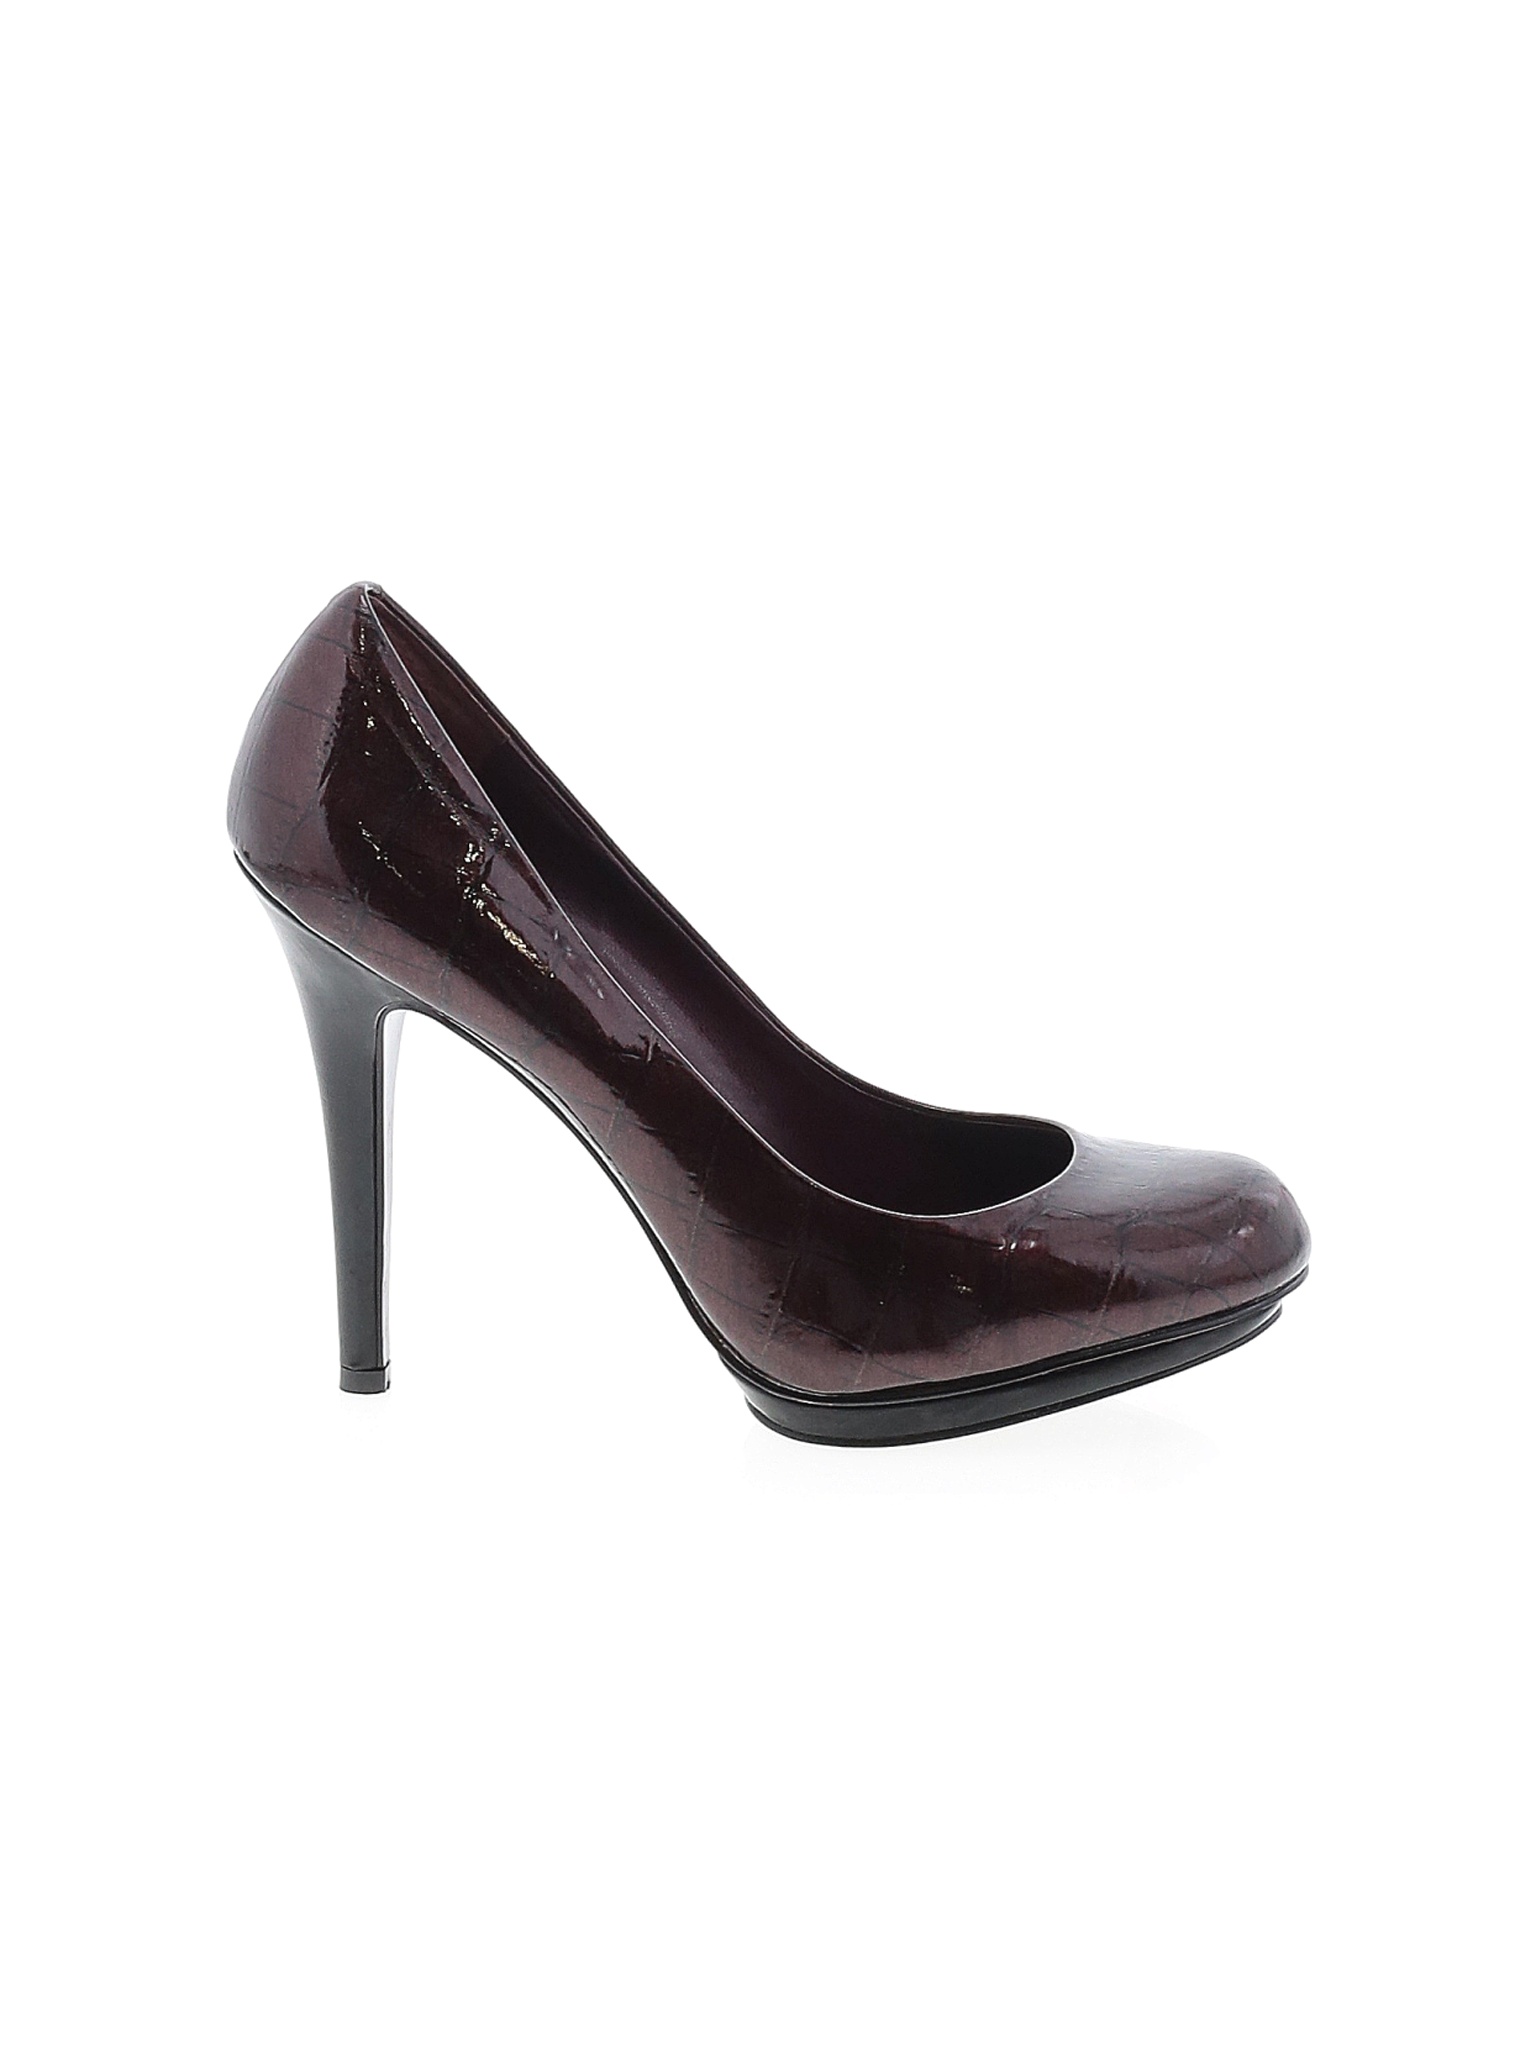 Jessica Simpson Women Brown Heels US 9 | eBay